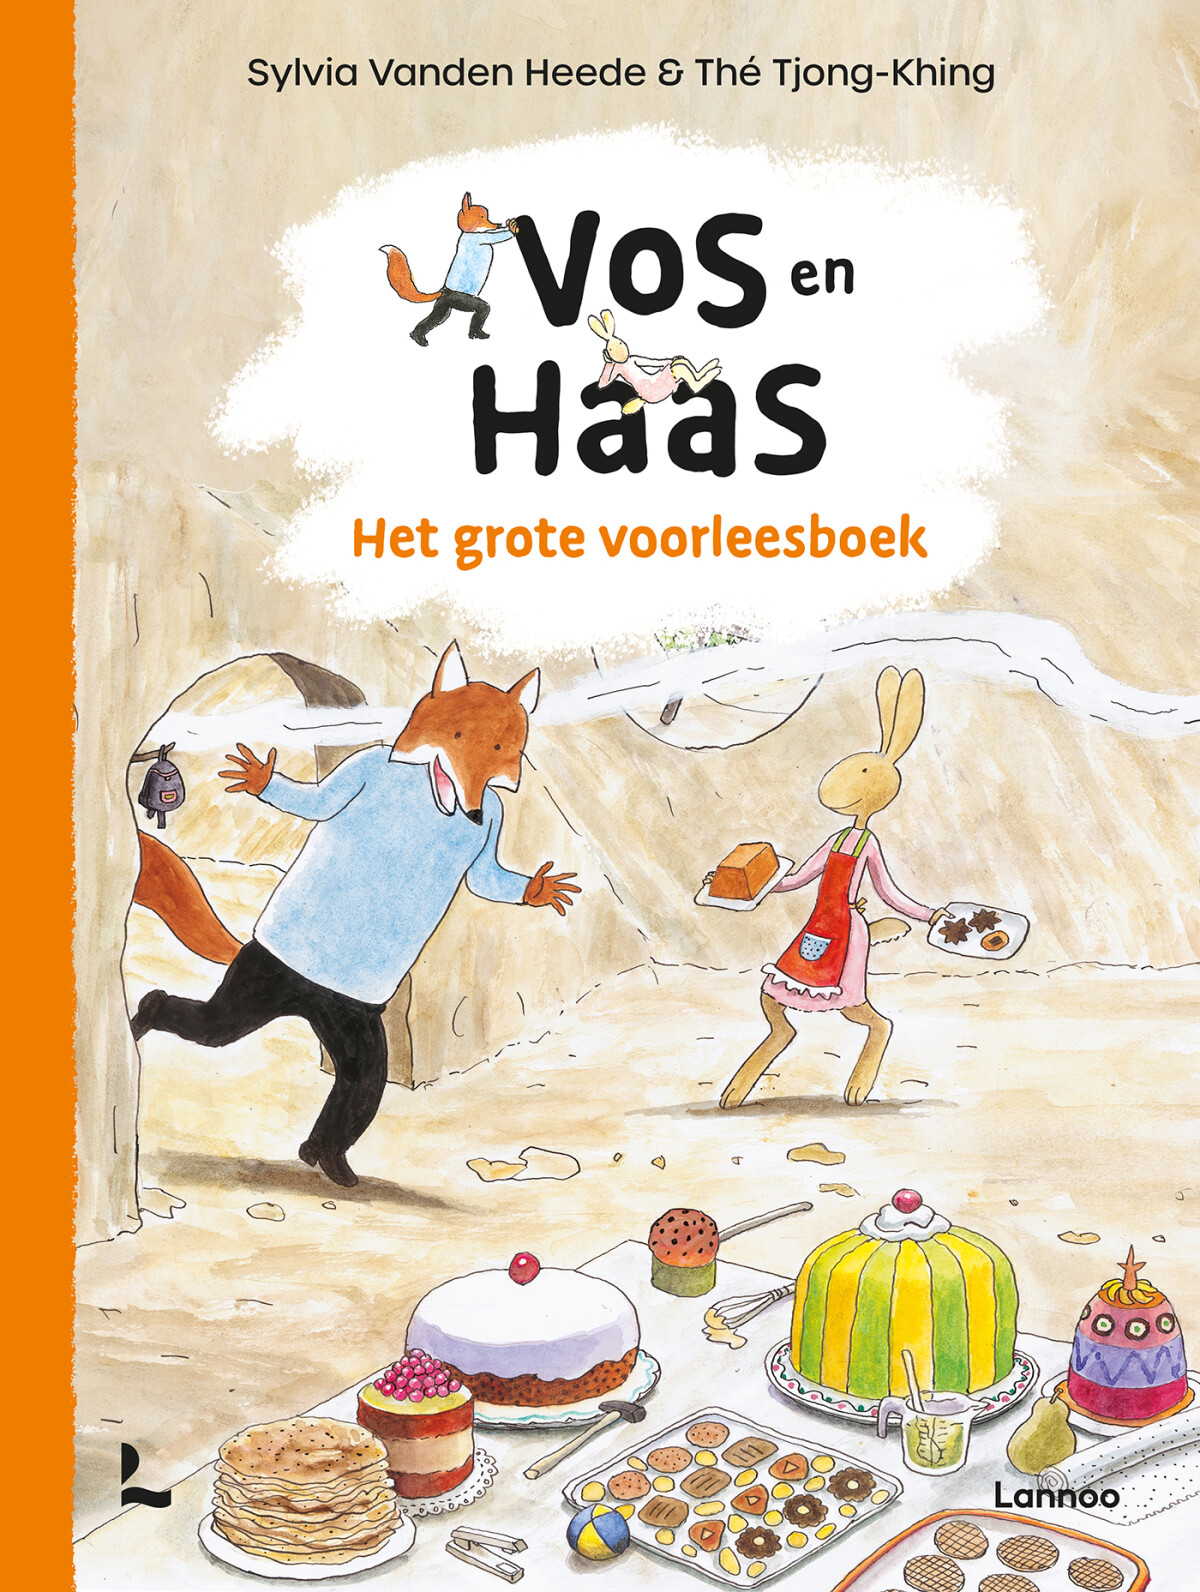 Het grote voorleesboek van Vos en Haas